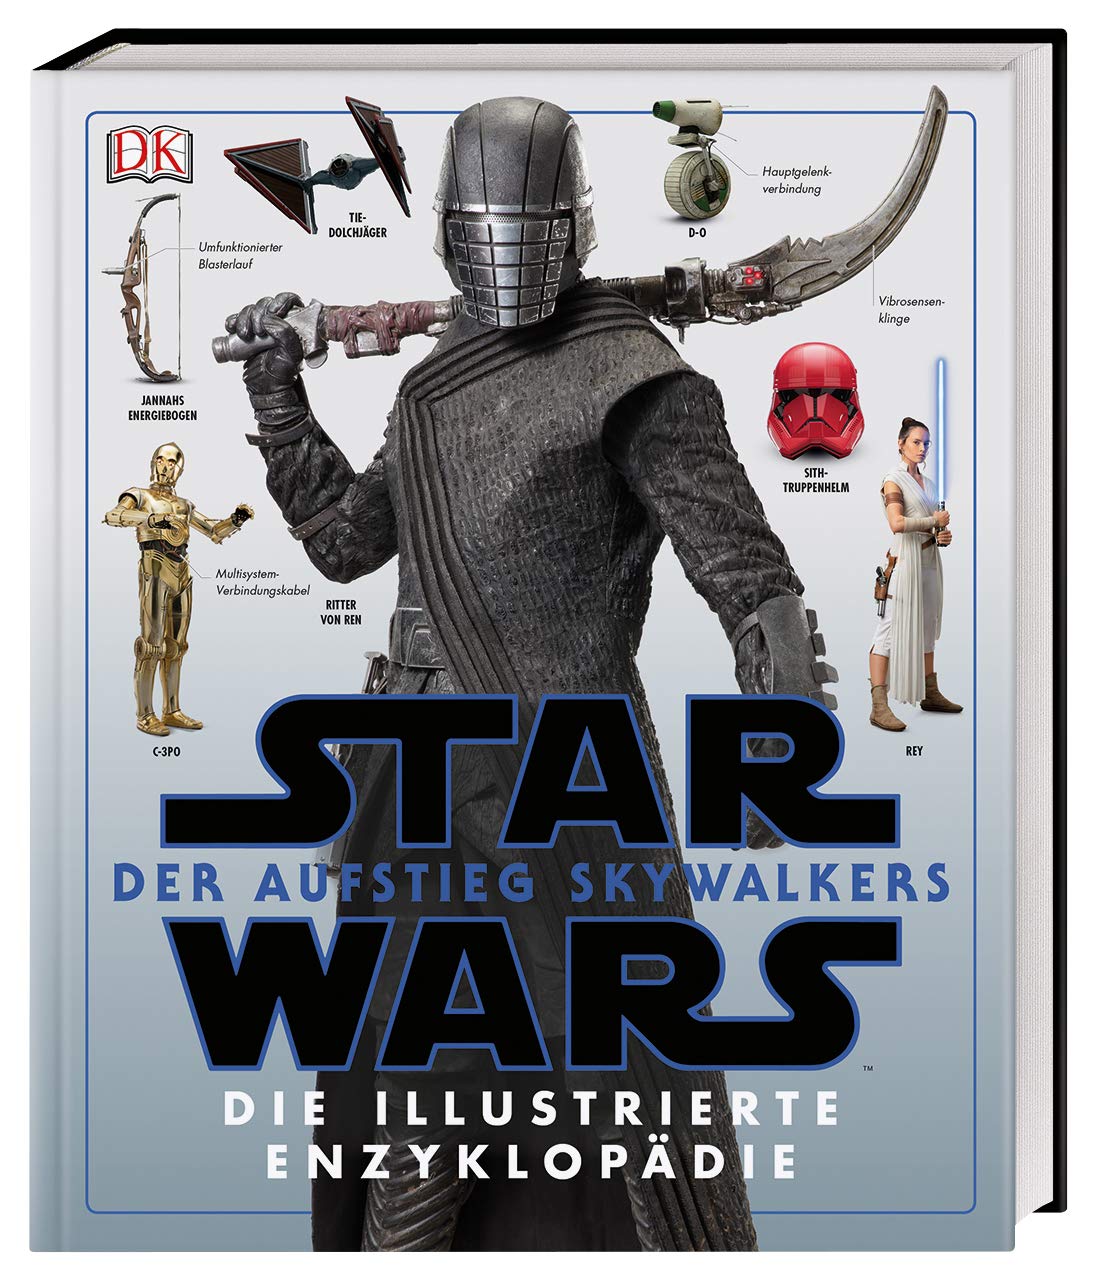 Star Wars: Der Aufstieg Skywalkers: Die illustrierte Enzyklopädie (24.12.2019)